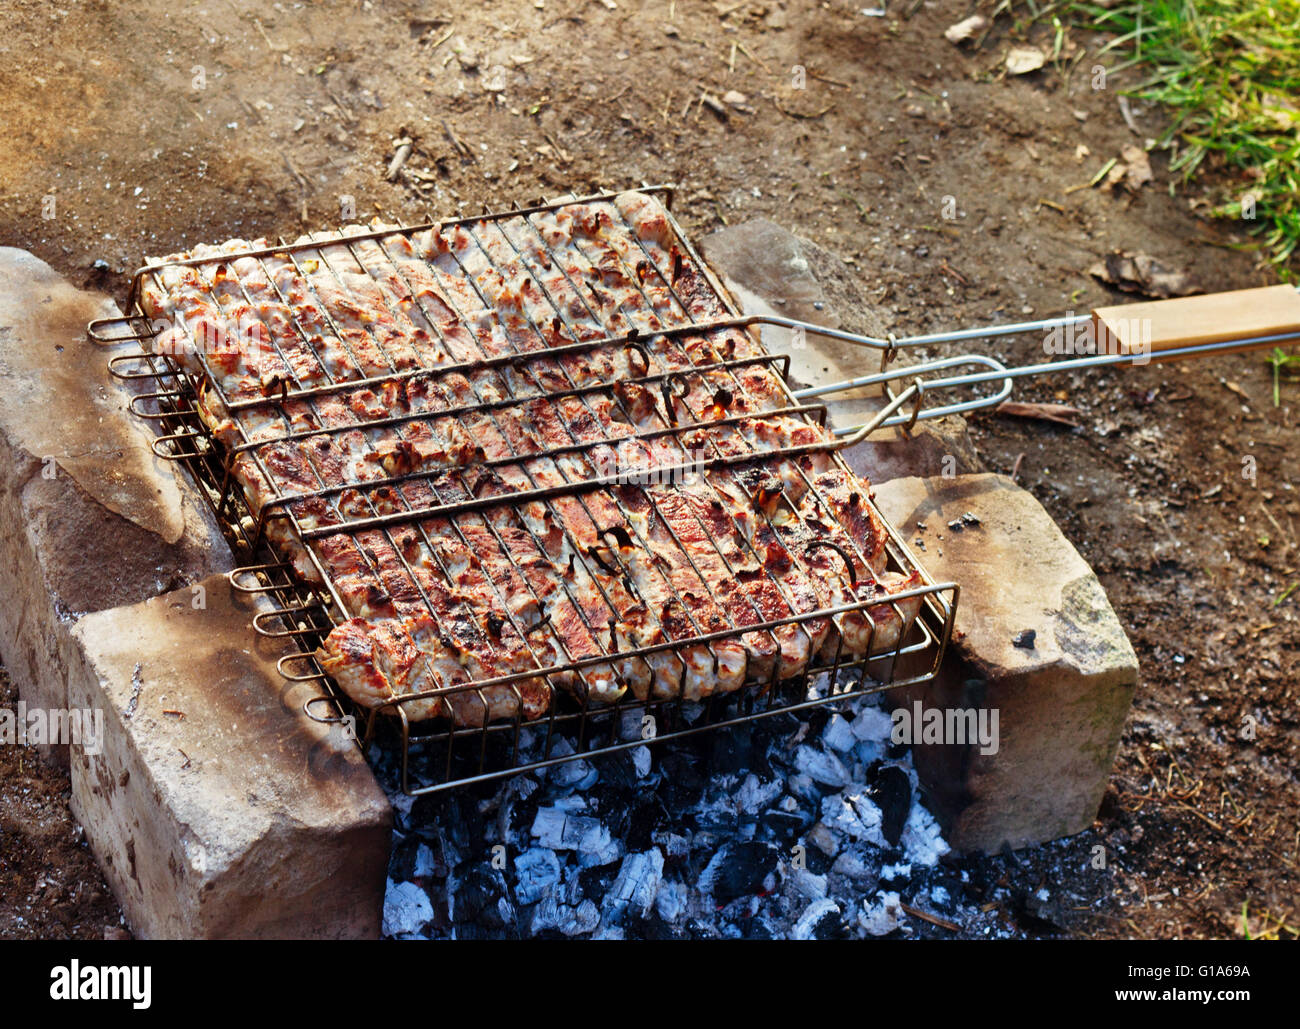 La viande, rôtie au feu, barbecue Banque D'Images